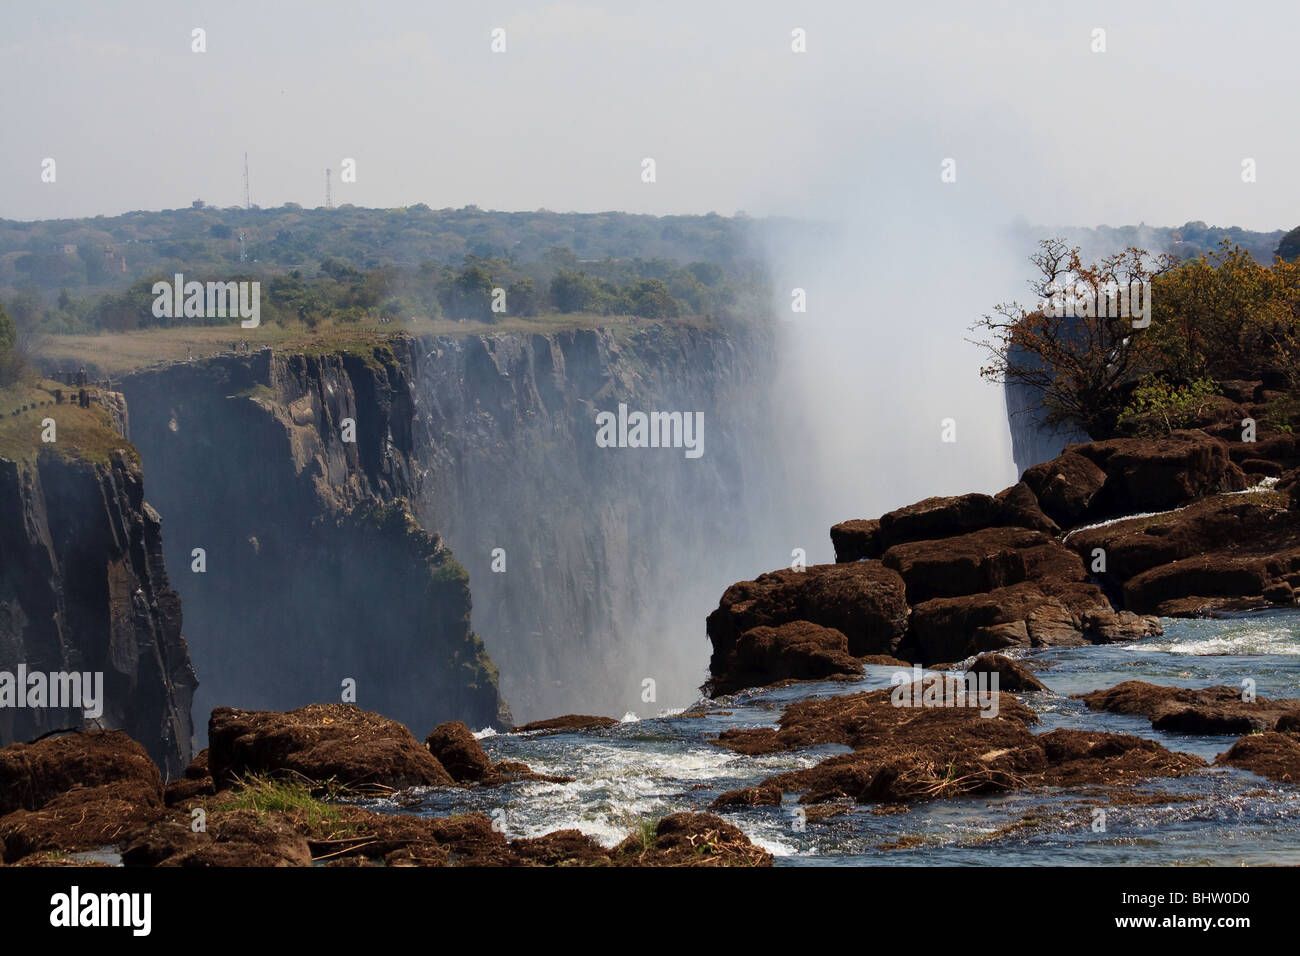 Africa Gorge River Victoria Falls Zambia Stock Photo